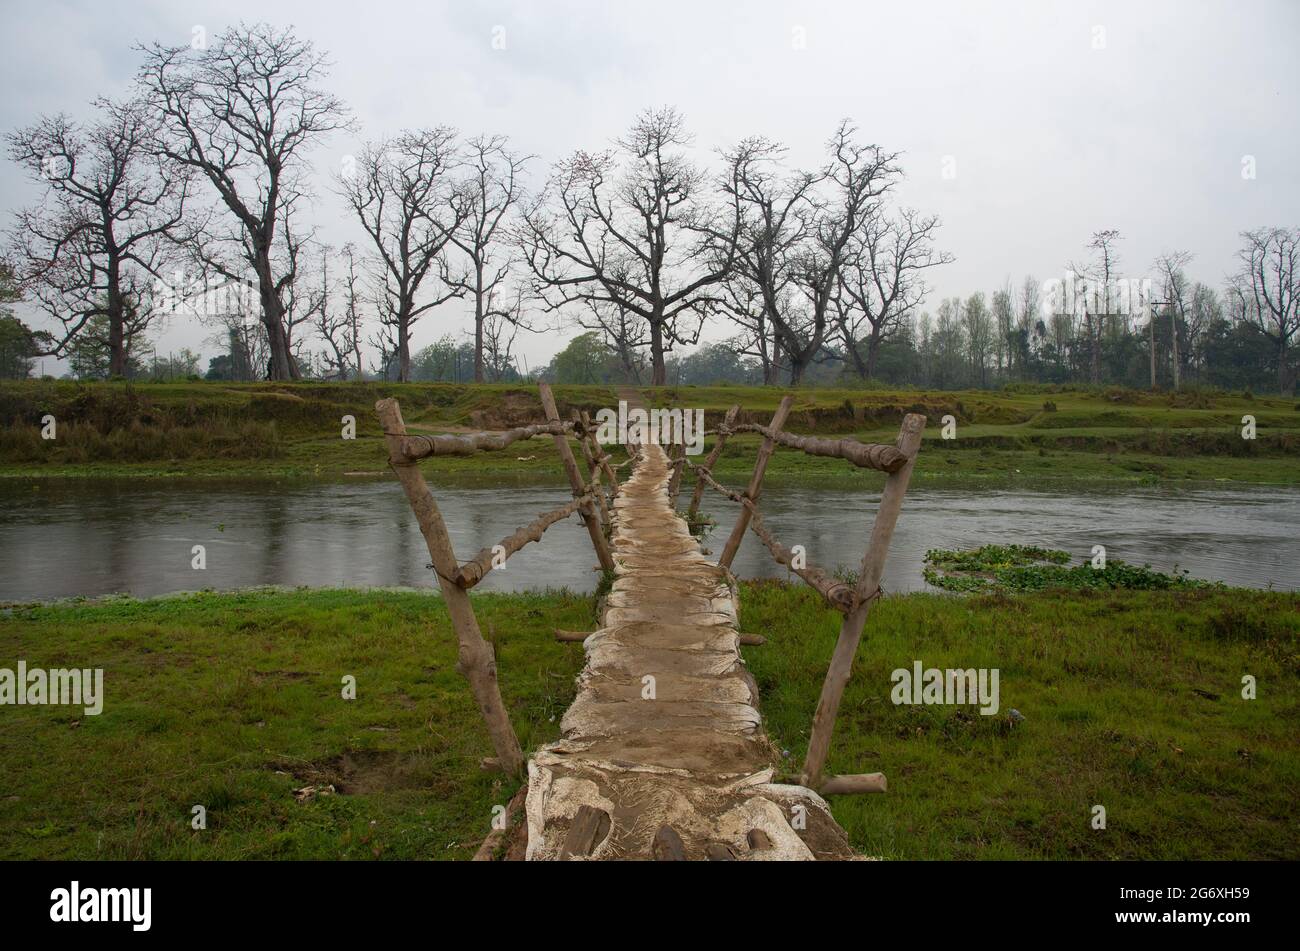 Ponte a piedi in legno sospeso sul fiume nella foresta tropicale. Parco safari Chitwan Nepal Asia Foto Stock